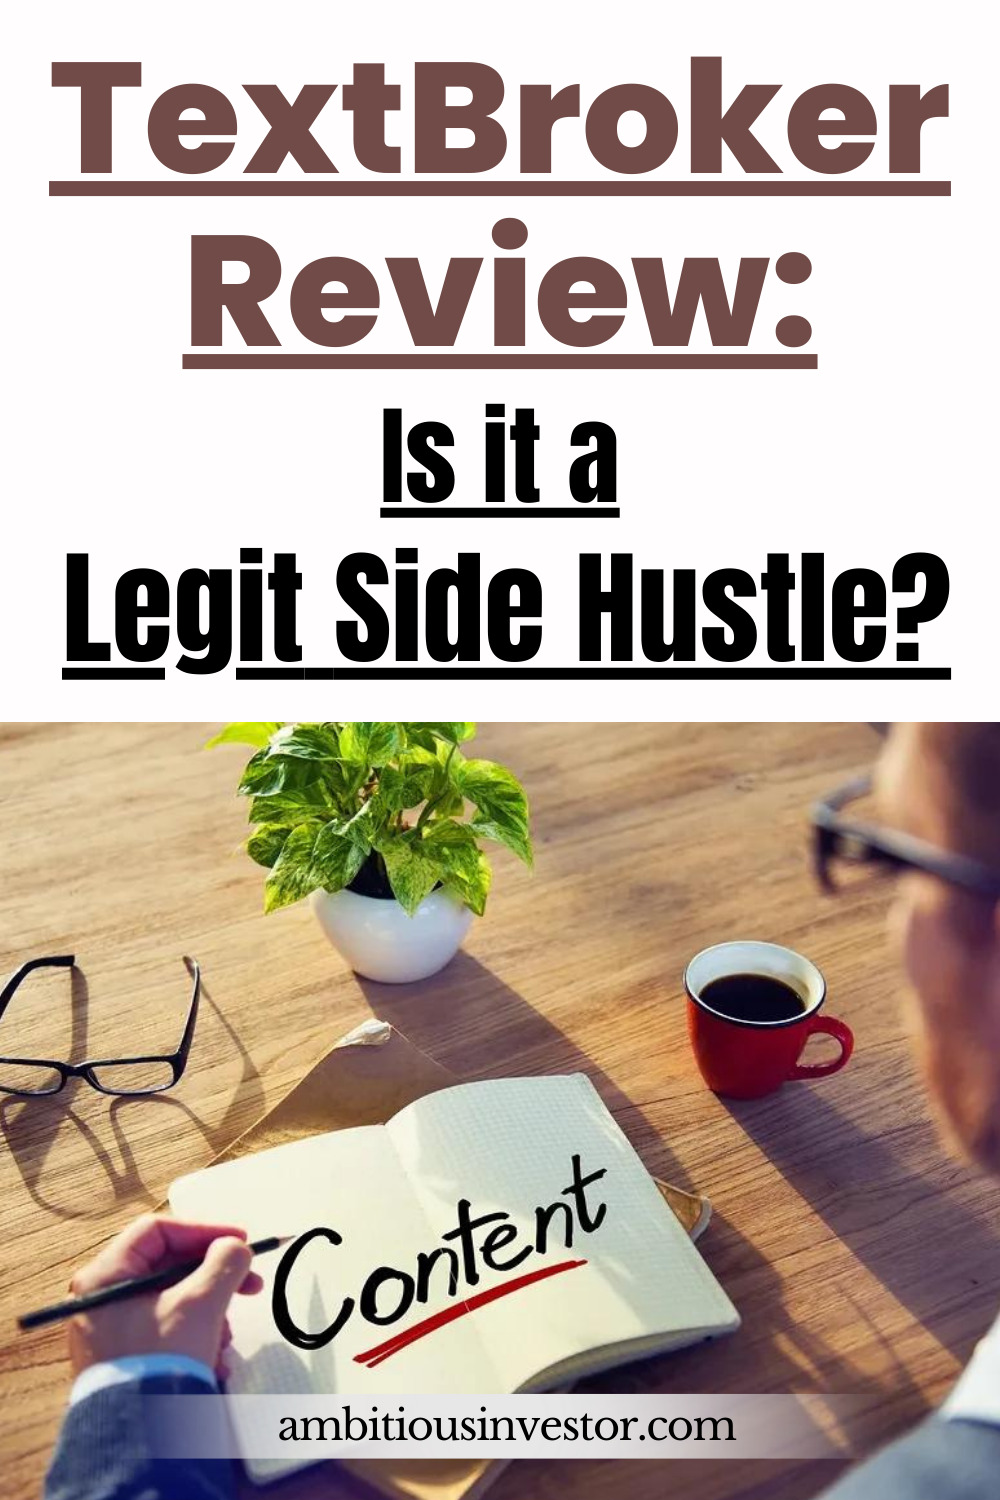 TextBroker Review: Is it a Legit Side Hustle?